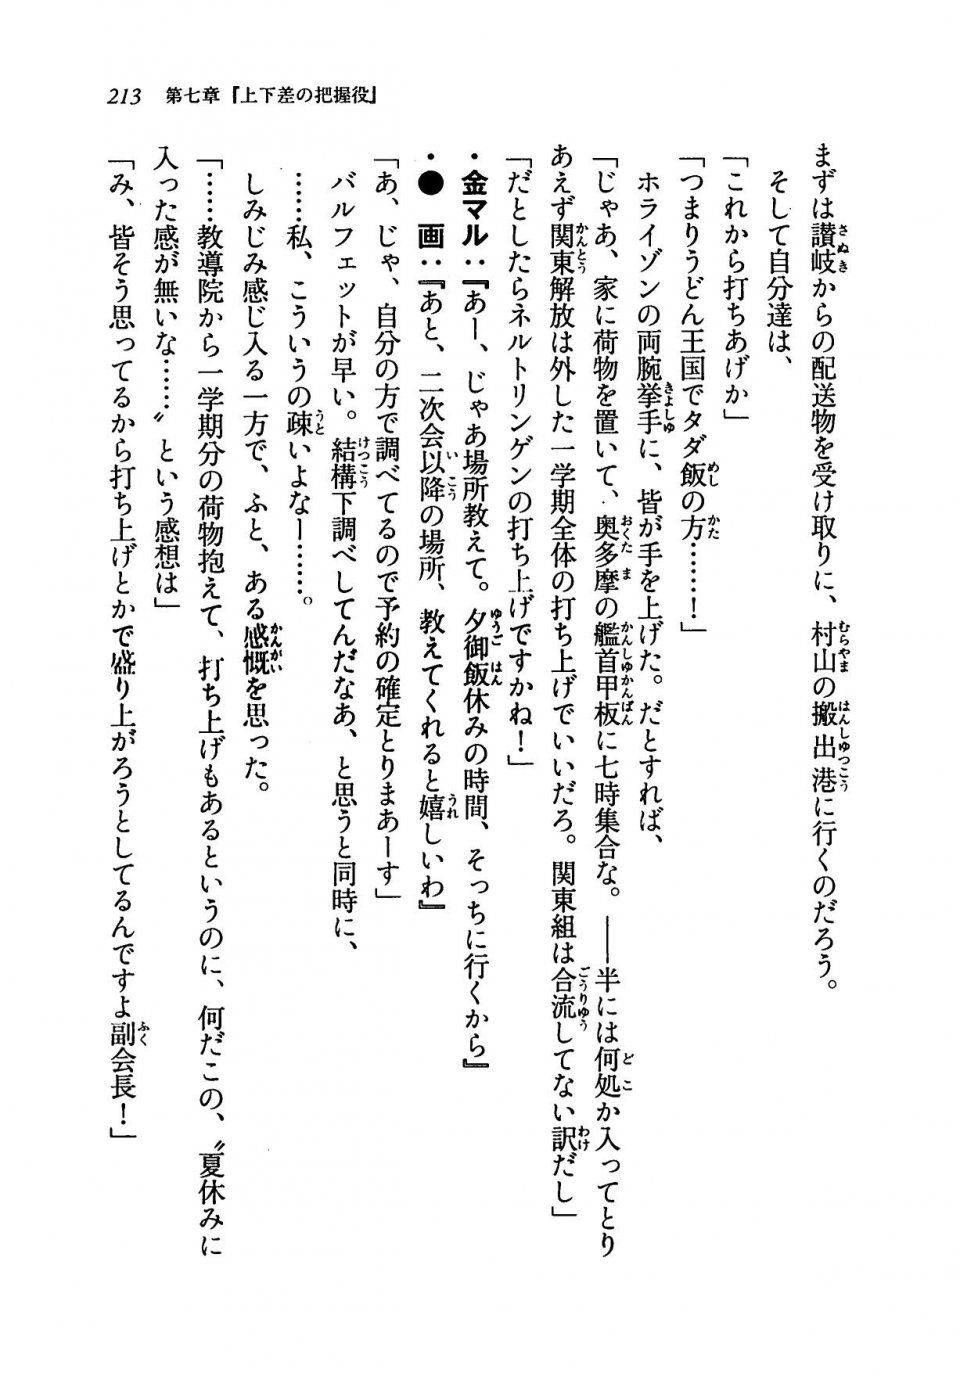 Kyoukai Senjou no Horizon LN Vol 19(8A) - Photo #213